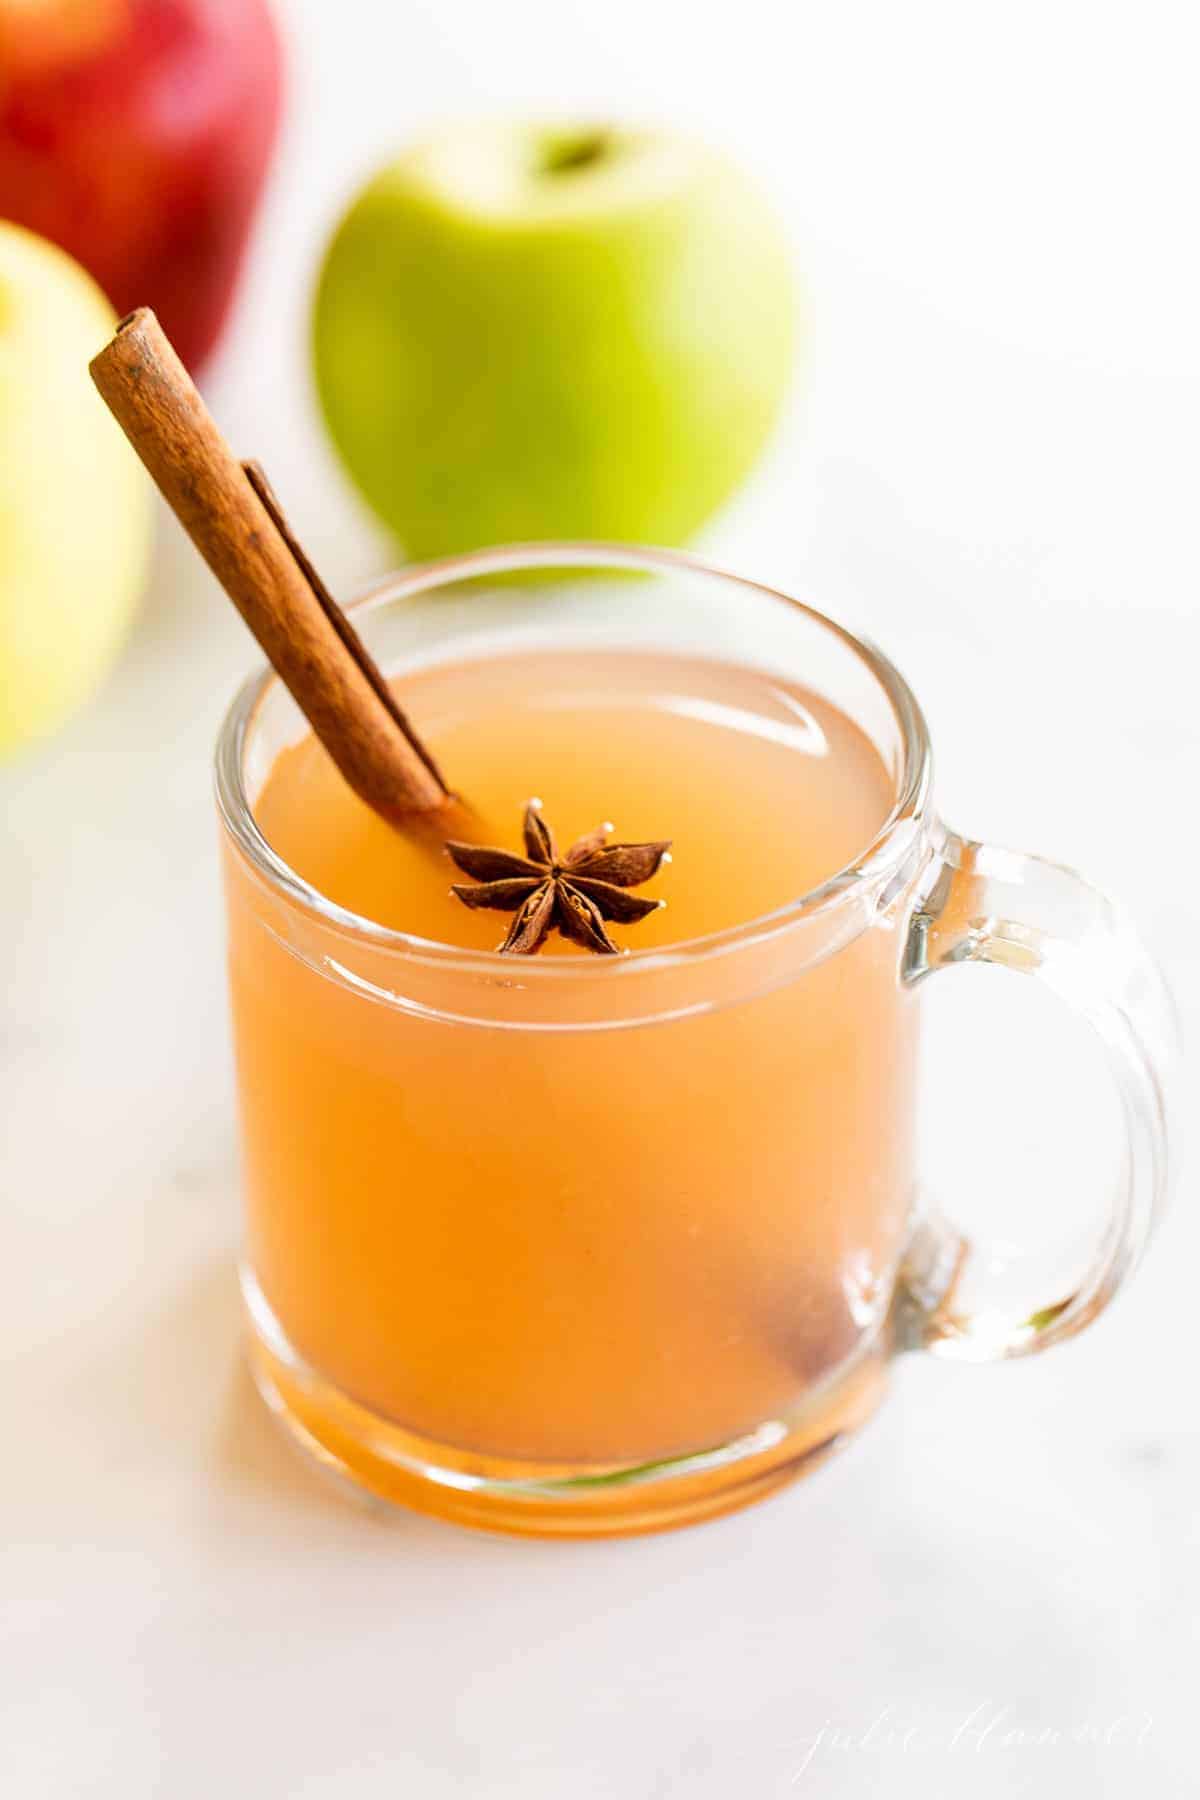 Easy Homemade Apple Cider Recipe | Julie Blanner